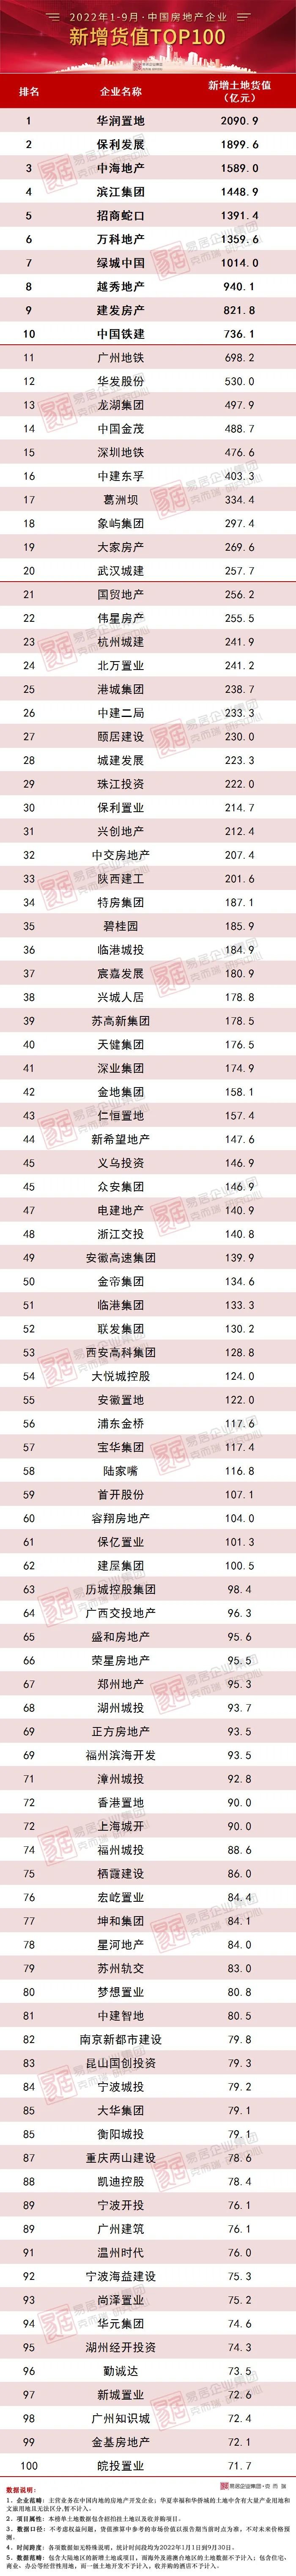 克而瑞发布2022年1-9月中国房地产企业新增货值TOP100排行榜